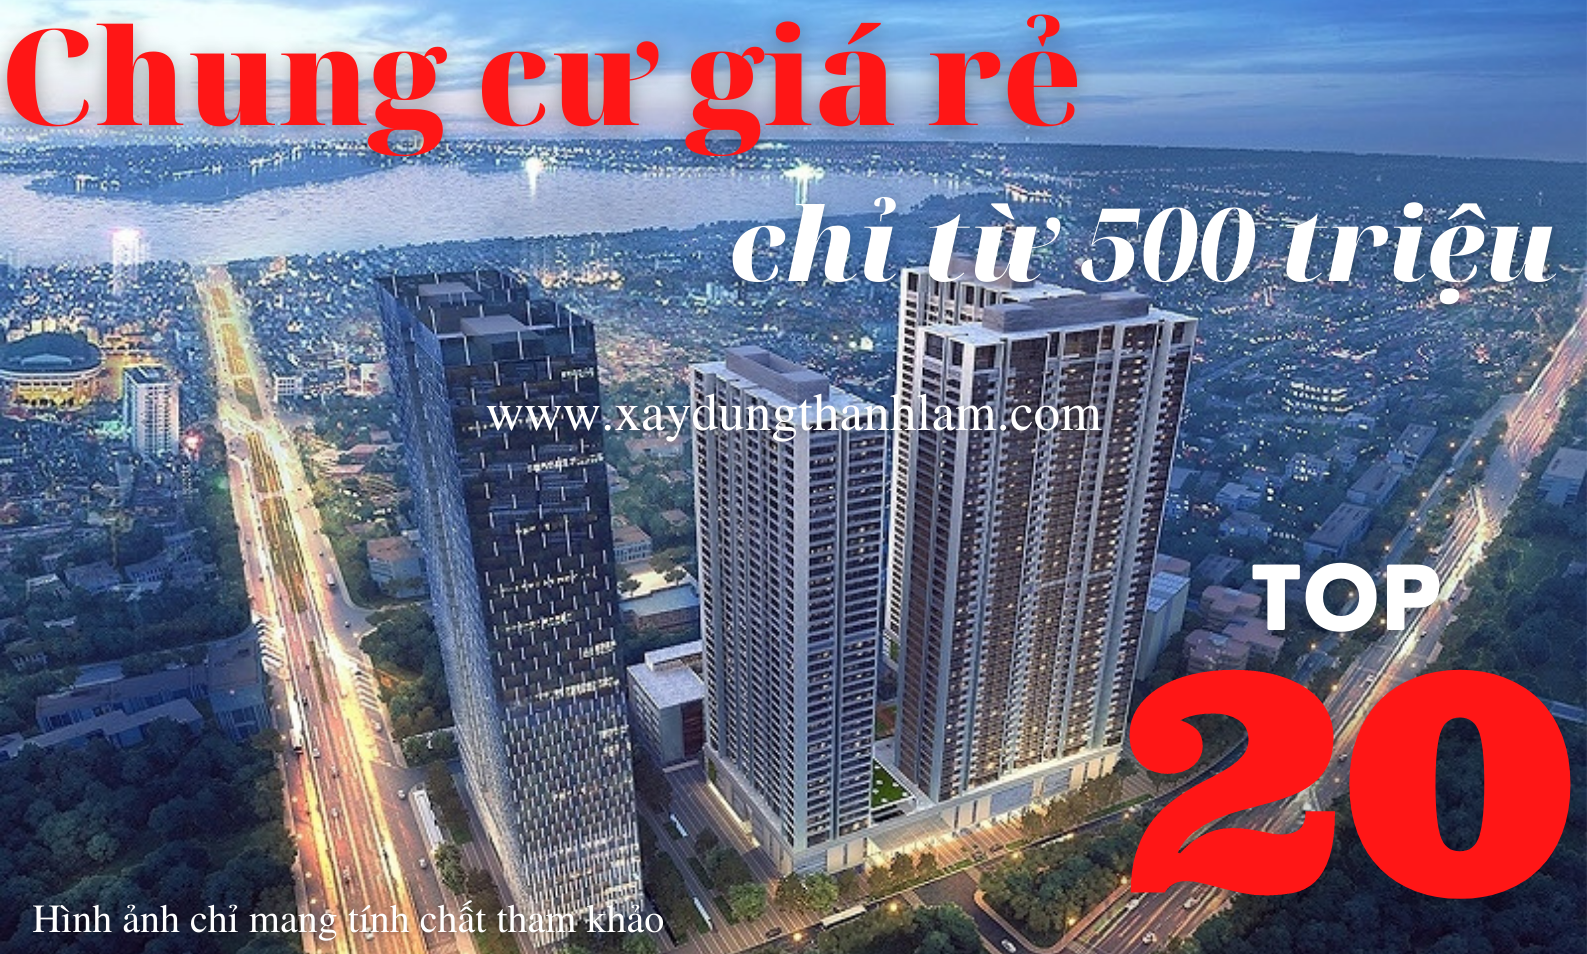 Top 20 chung cư giá chỉ từ 500 triệu ở được luôn tại Hà Nội - Xây dựng Thanh  Lâm